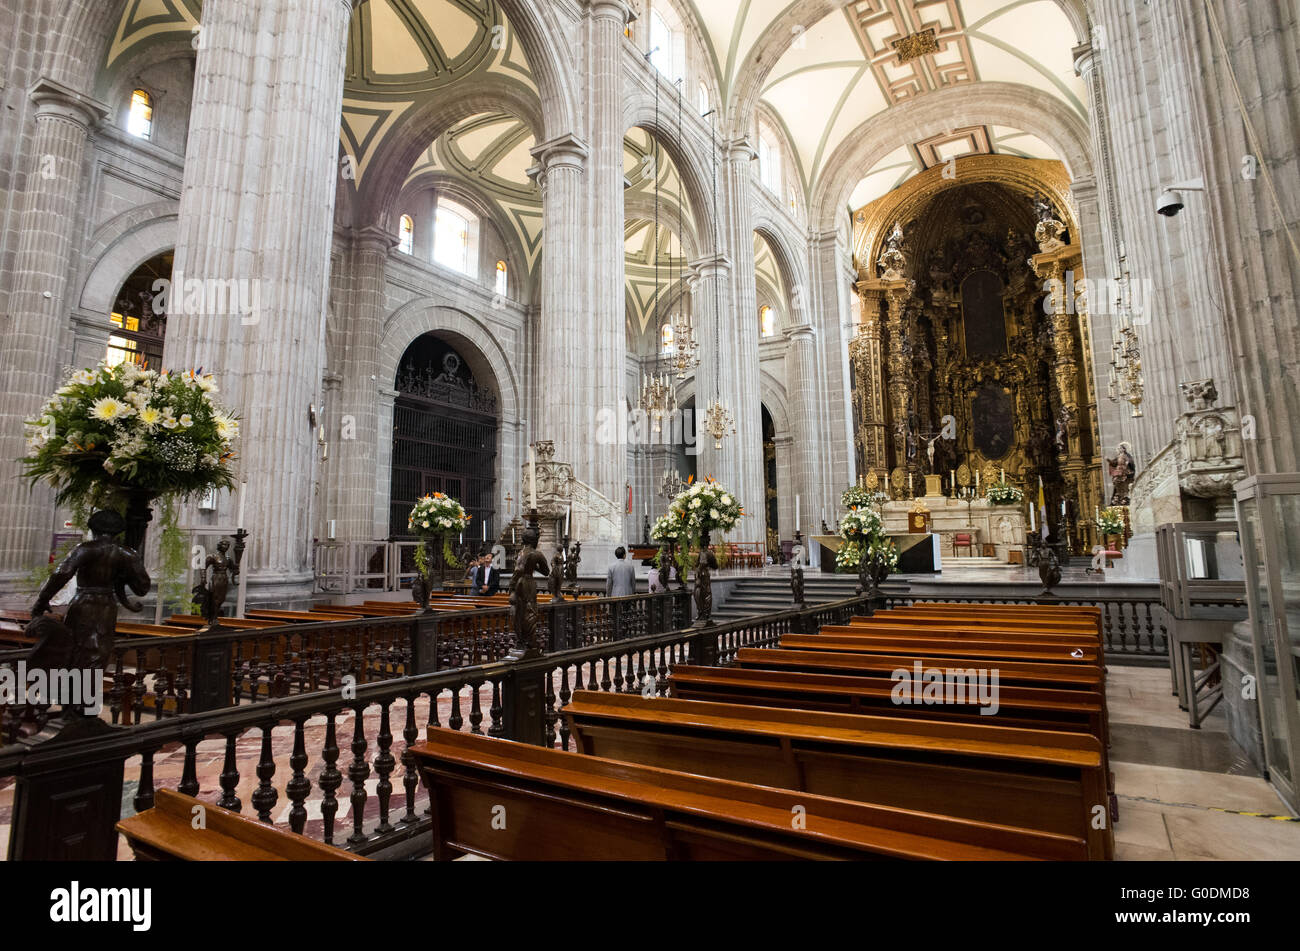 Mexiko-Stadt, Mexiko - gebaut in Phasen von 1573 bis 1813, der Kathedrale von Mexiko-Stadt ist die größte römisch-katholische Kathedrale in Amerika. Es befindet sich im Herzen der Altstadt von Mexiko-Stadt auf der einen Seite von den Zocalo. Stockfoto